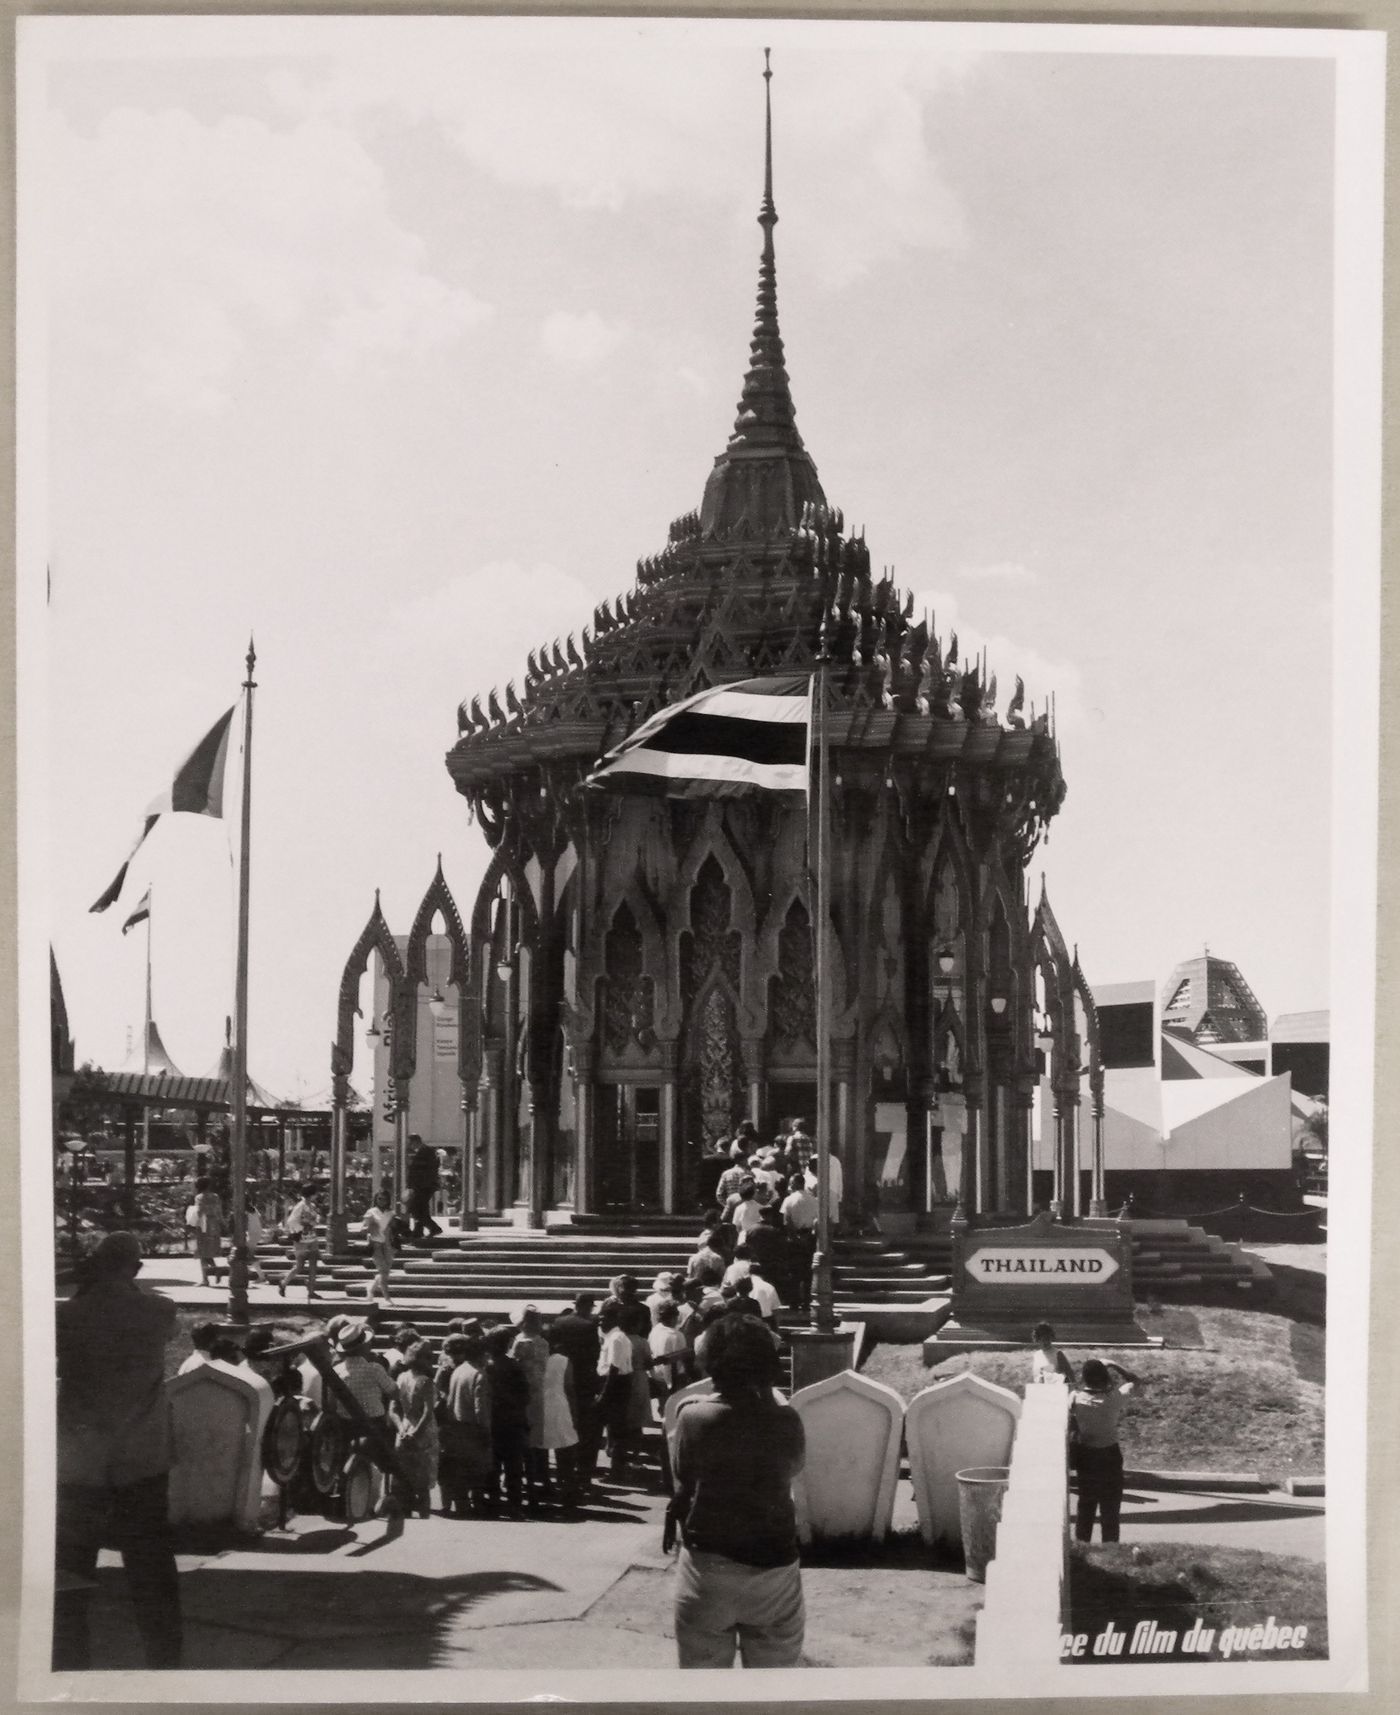 View of the Thailand Pavilion, Expo 67, Montréal, Québec